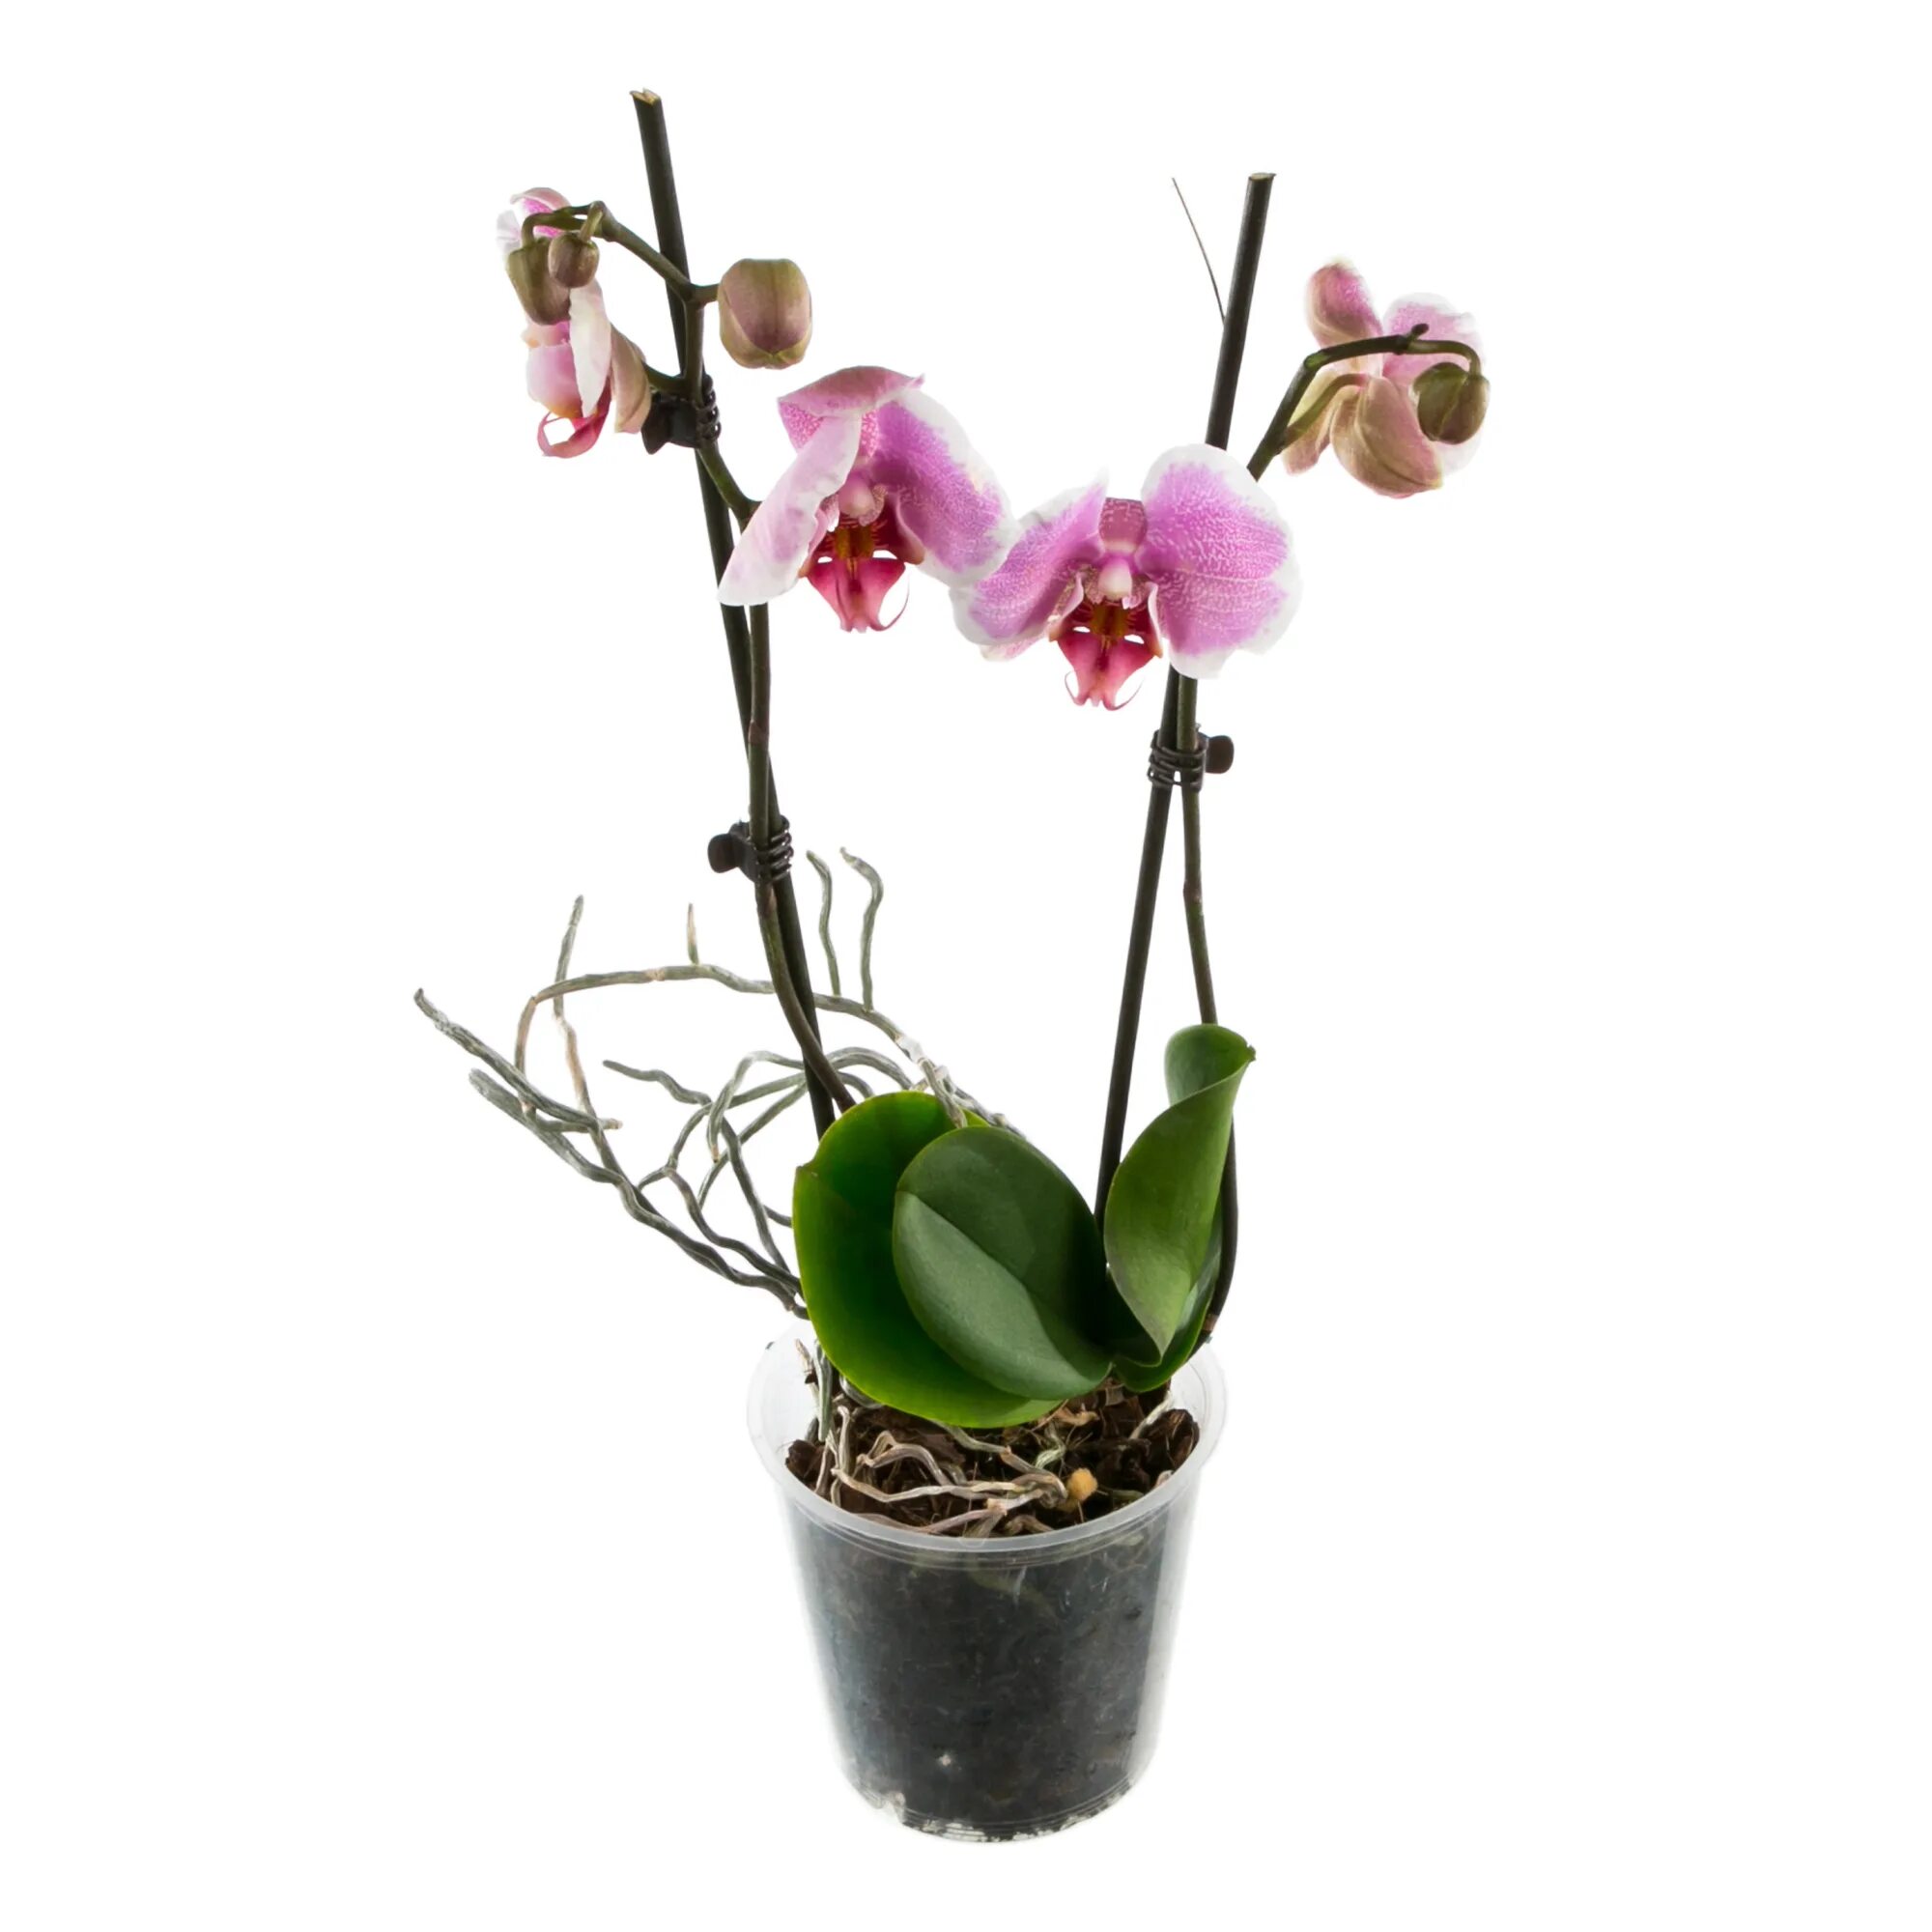 Орхидея в горшке купить в самаре. Орхидея фаленопсис микс. Фаленопсис мини микс. Орхидеи в Леруа Мерлен. Орхидея фаленопсис мини микс.